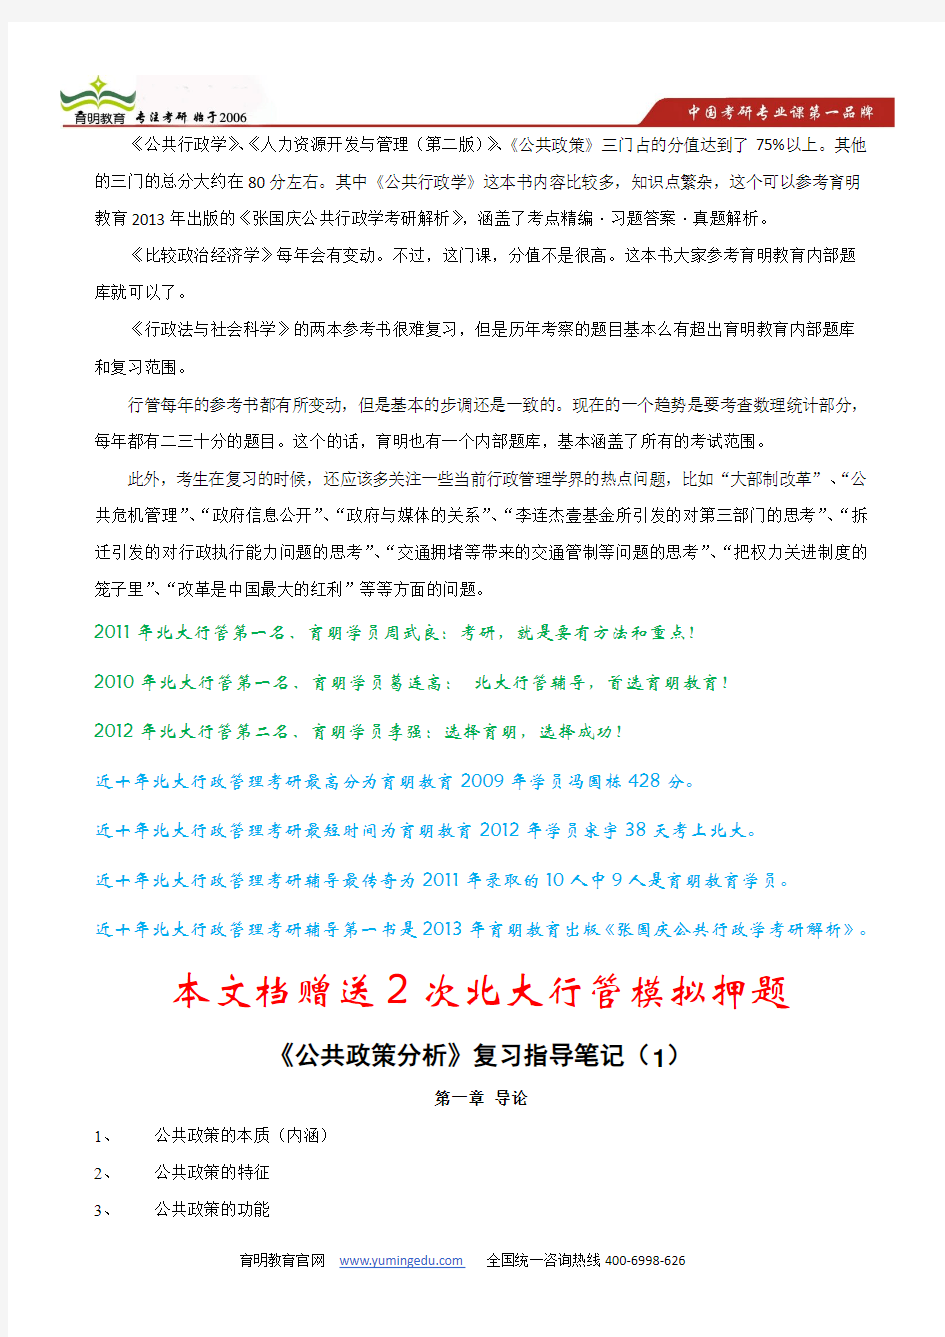 陈庆云公共政策分析考研笔记-2015年北大行政管理考研笔记